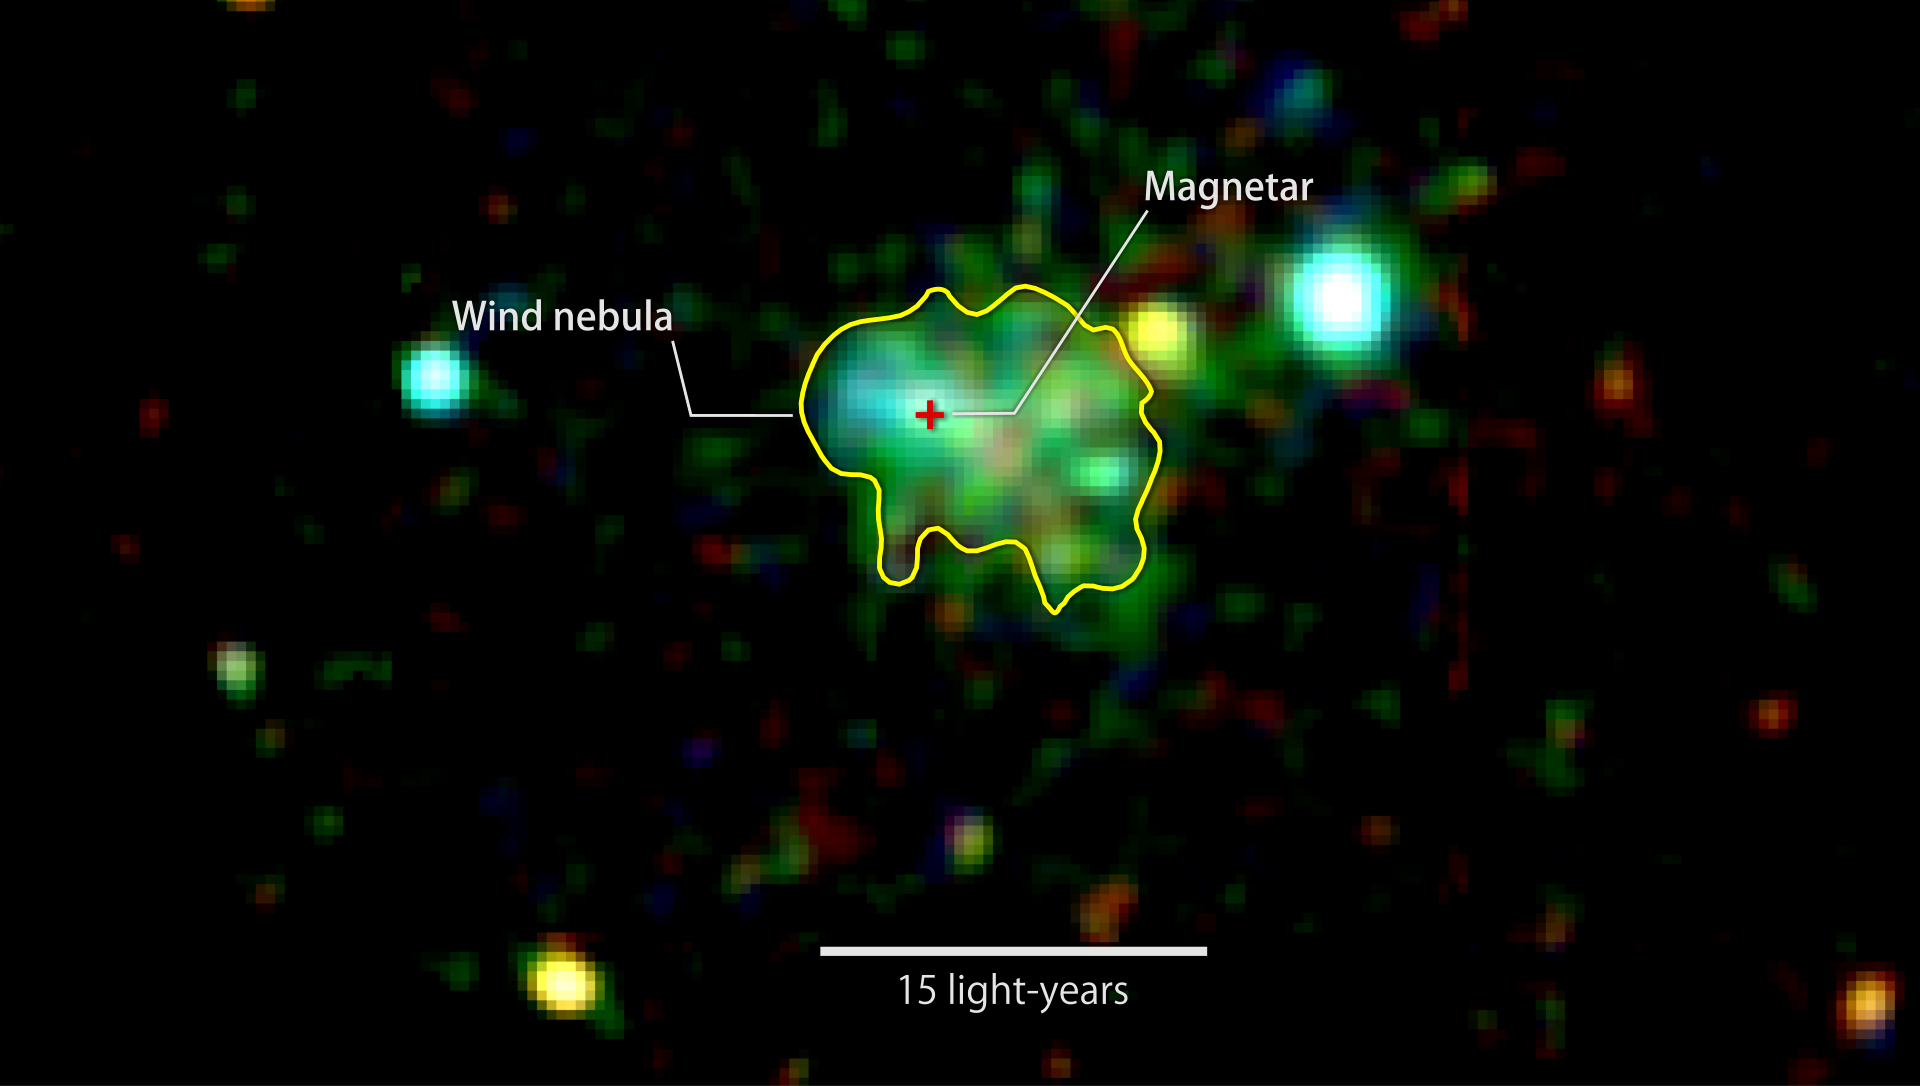 Изображение получено в рентгеновском излучении. На нем изображена туманность, окружающая редчайший объект- магнетар. Свечение, обведенное желтым, исходит от облака из быстро движущихся частиц. Облако образовано нейтронной звездой, которую оно обволакивает. Цвет соответствует показателям рентгеновского излучения: красный- 2,000-3,000 электронвольт [эВ], 3,000-4,500 [эВ]- зеленый, 5,000-10,000[эВ]- голубой.